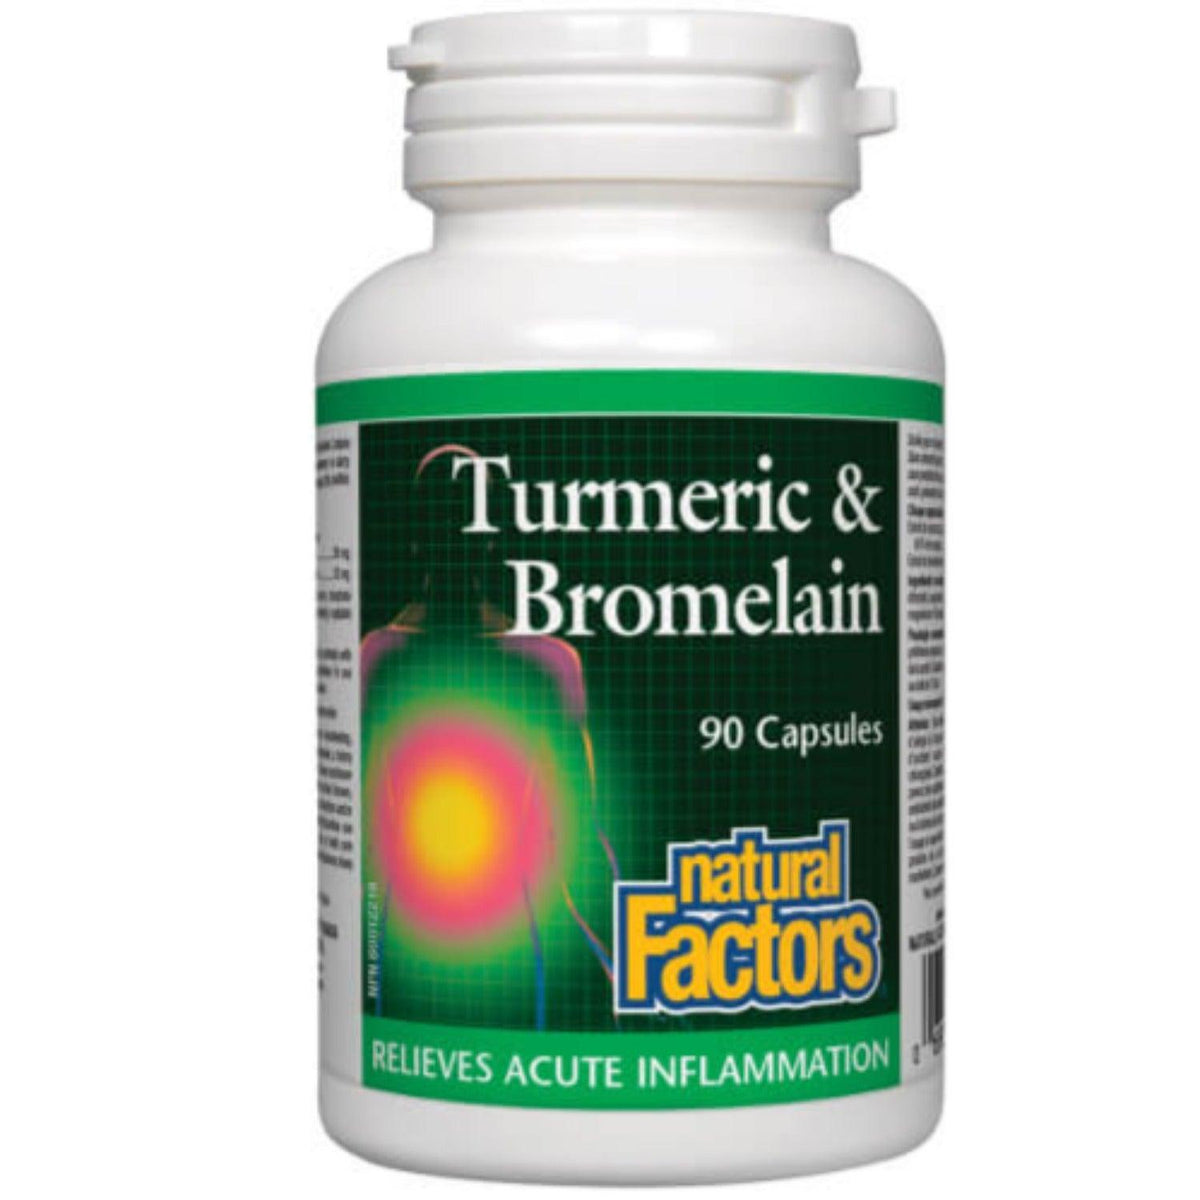 Natural Factors Turmeric & Bromelain 90 Caps Supplements - Turmeric at Village Vitamin Store